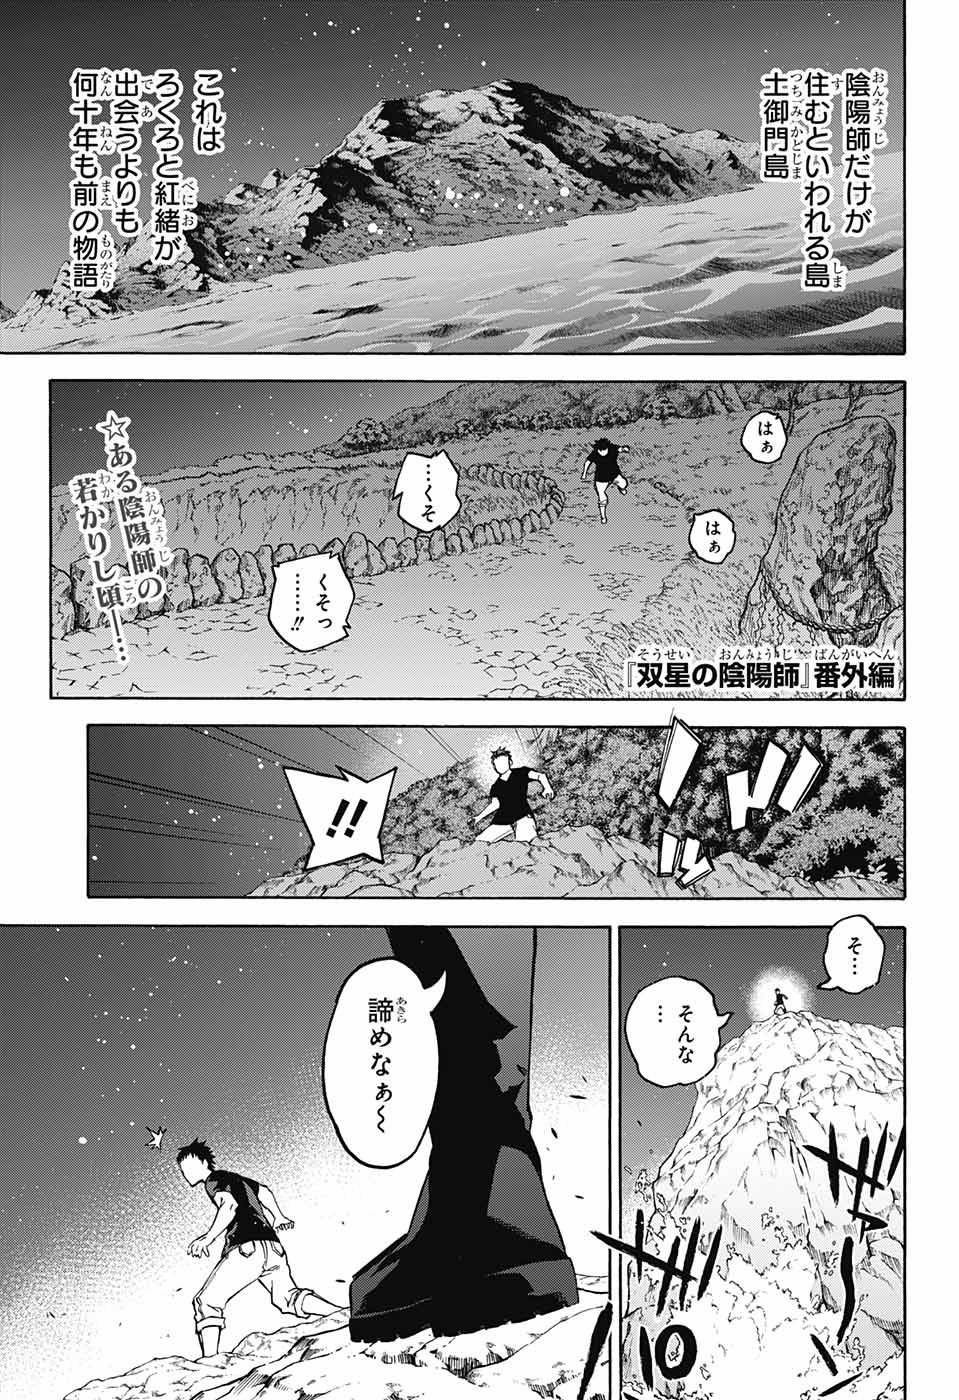 Sousei no Onmyouji - Chapter 33.5 - Page 1